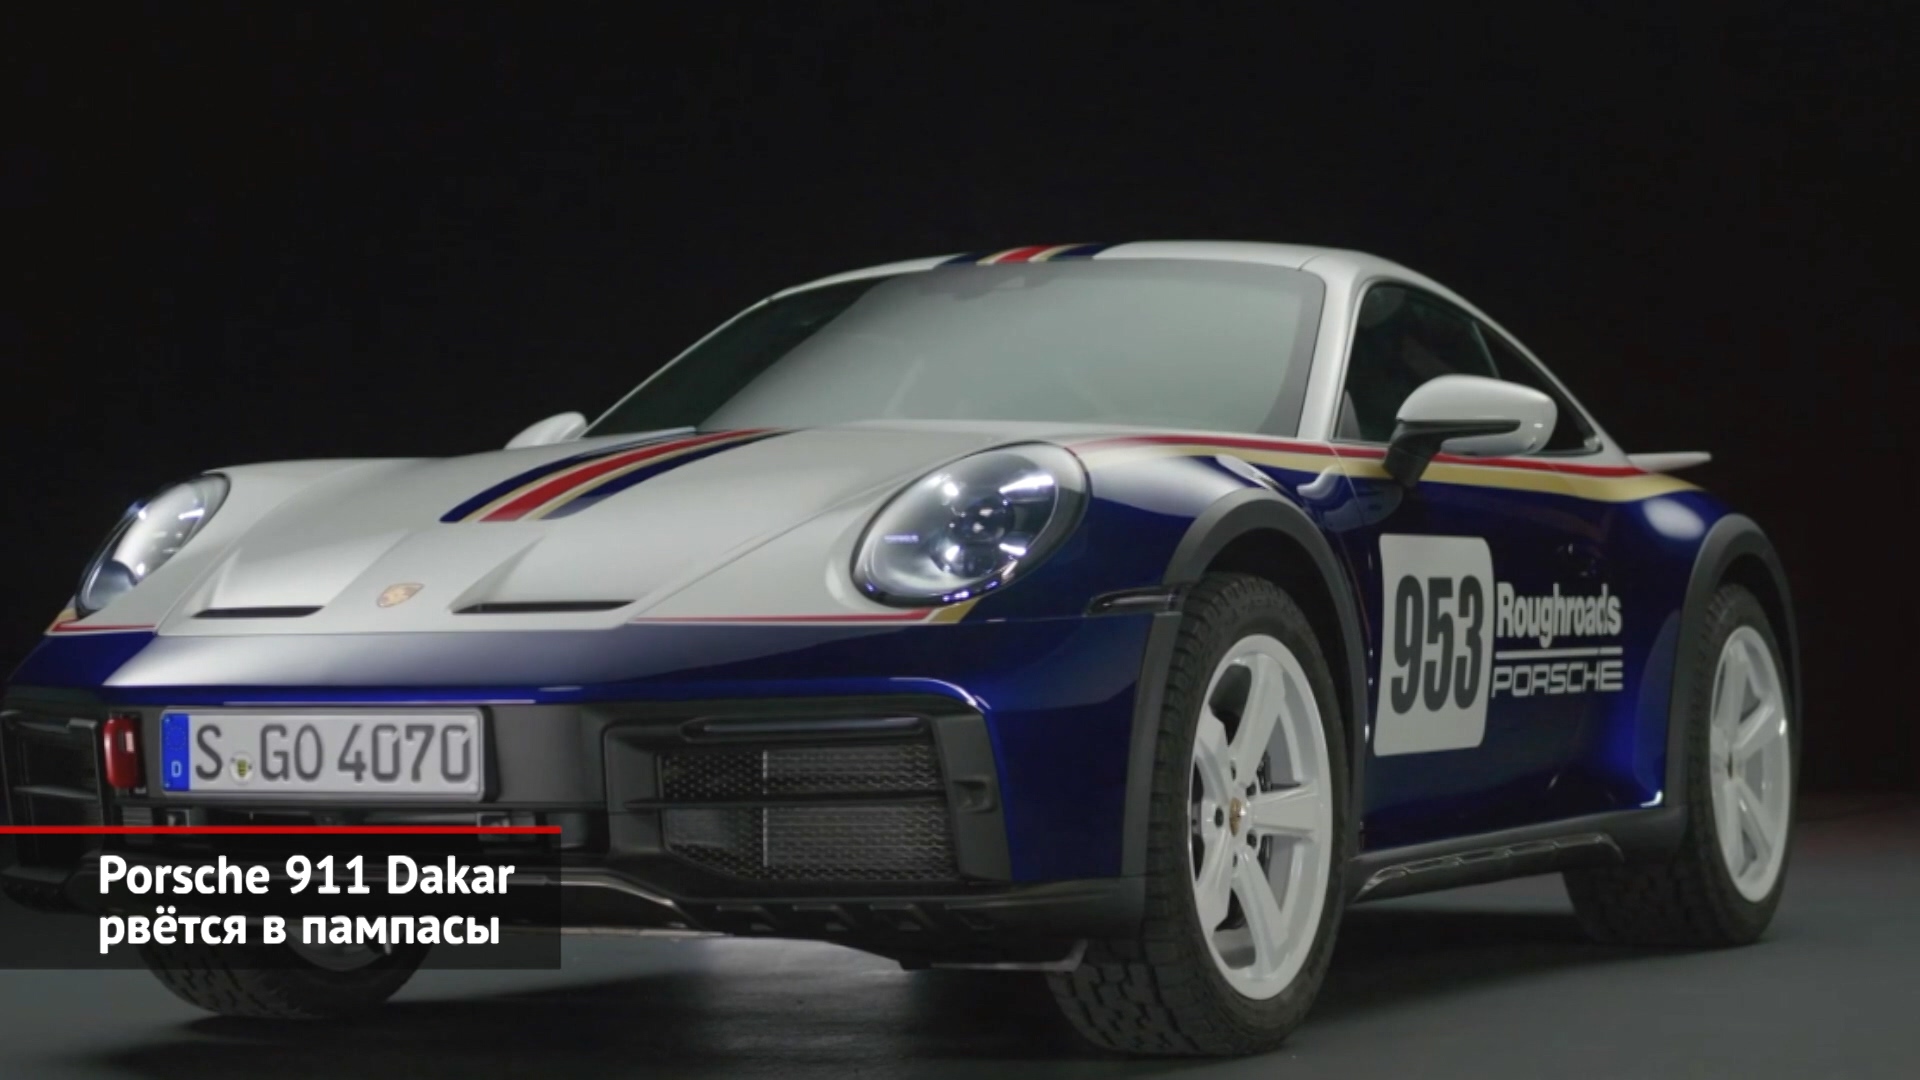 Porsche 911 Dakar рвётся в пампасы. Praga Bohema приехал из Чехии | Новости с колёс №2292